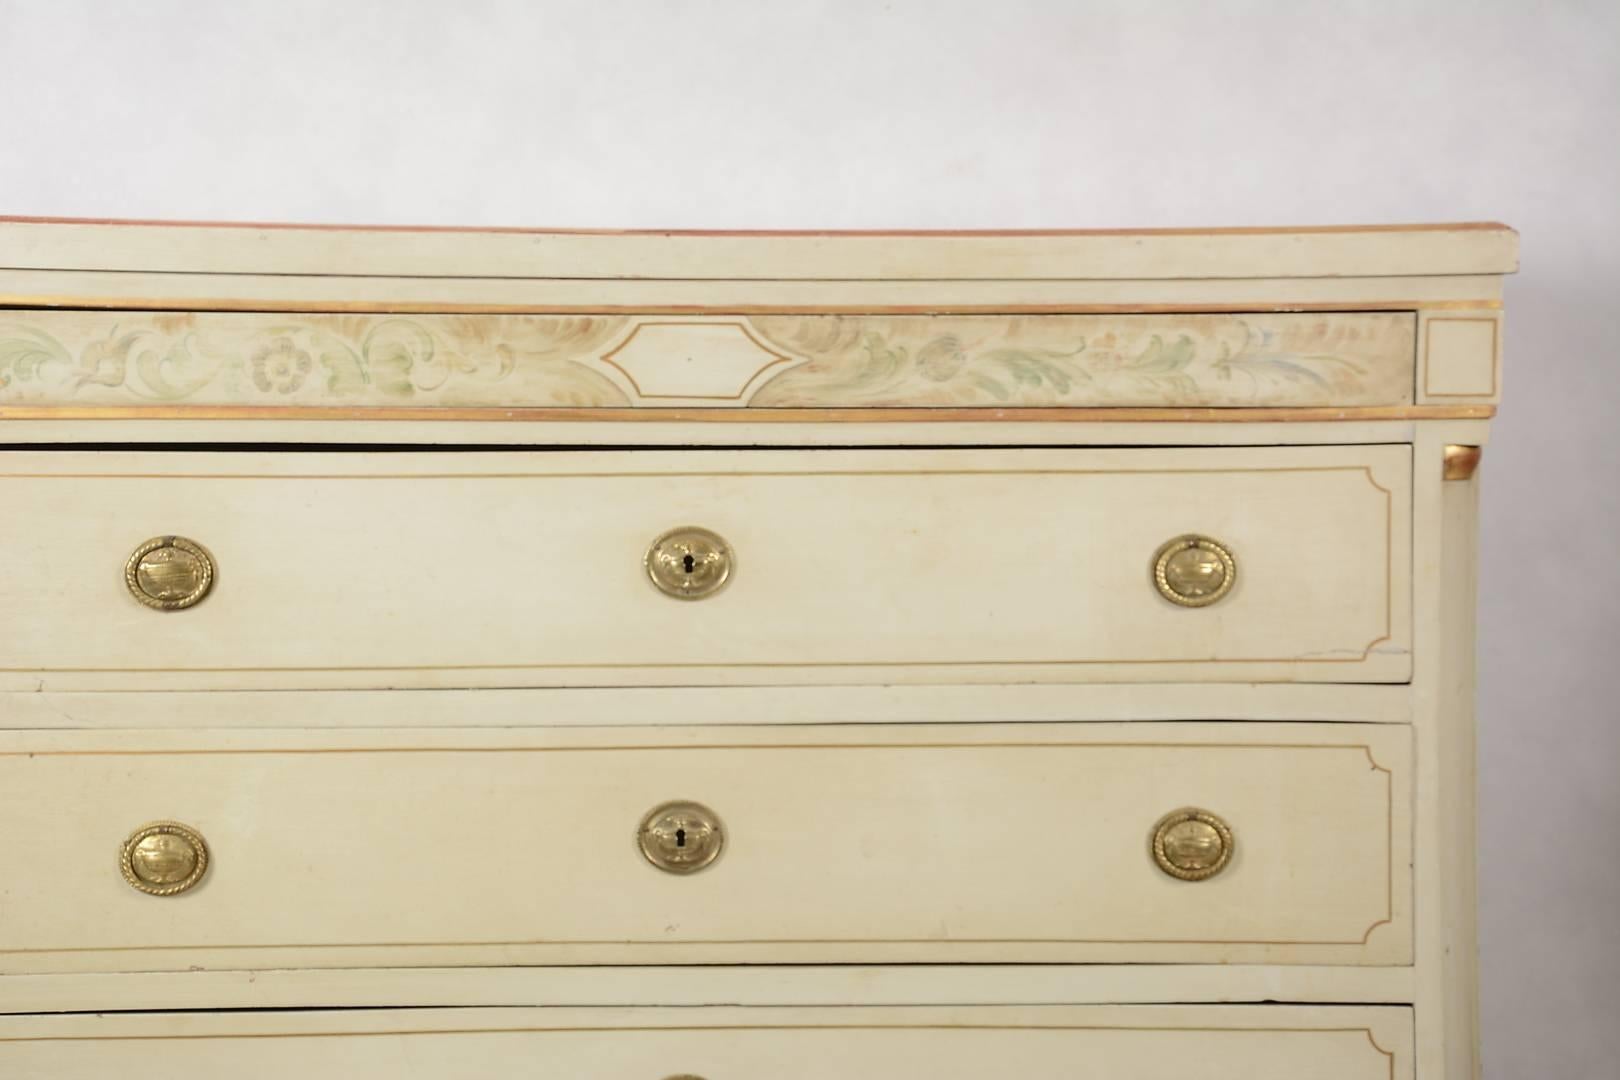 Antike schwedische Gustavianische Kommode aus dem 19. Jahrhundert mit detaillierten handgemalten Motiven auf der oberen Schiene und vergoldeten Verzierungen.

Es hat vier Schubladen mit Messingringgriffen und einen geschnitzten Sockel und Füße mit